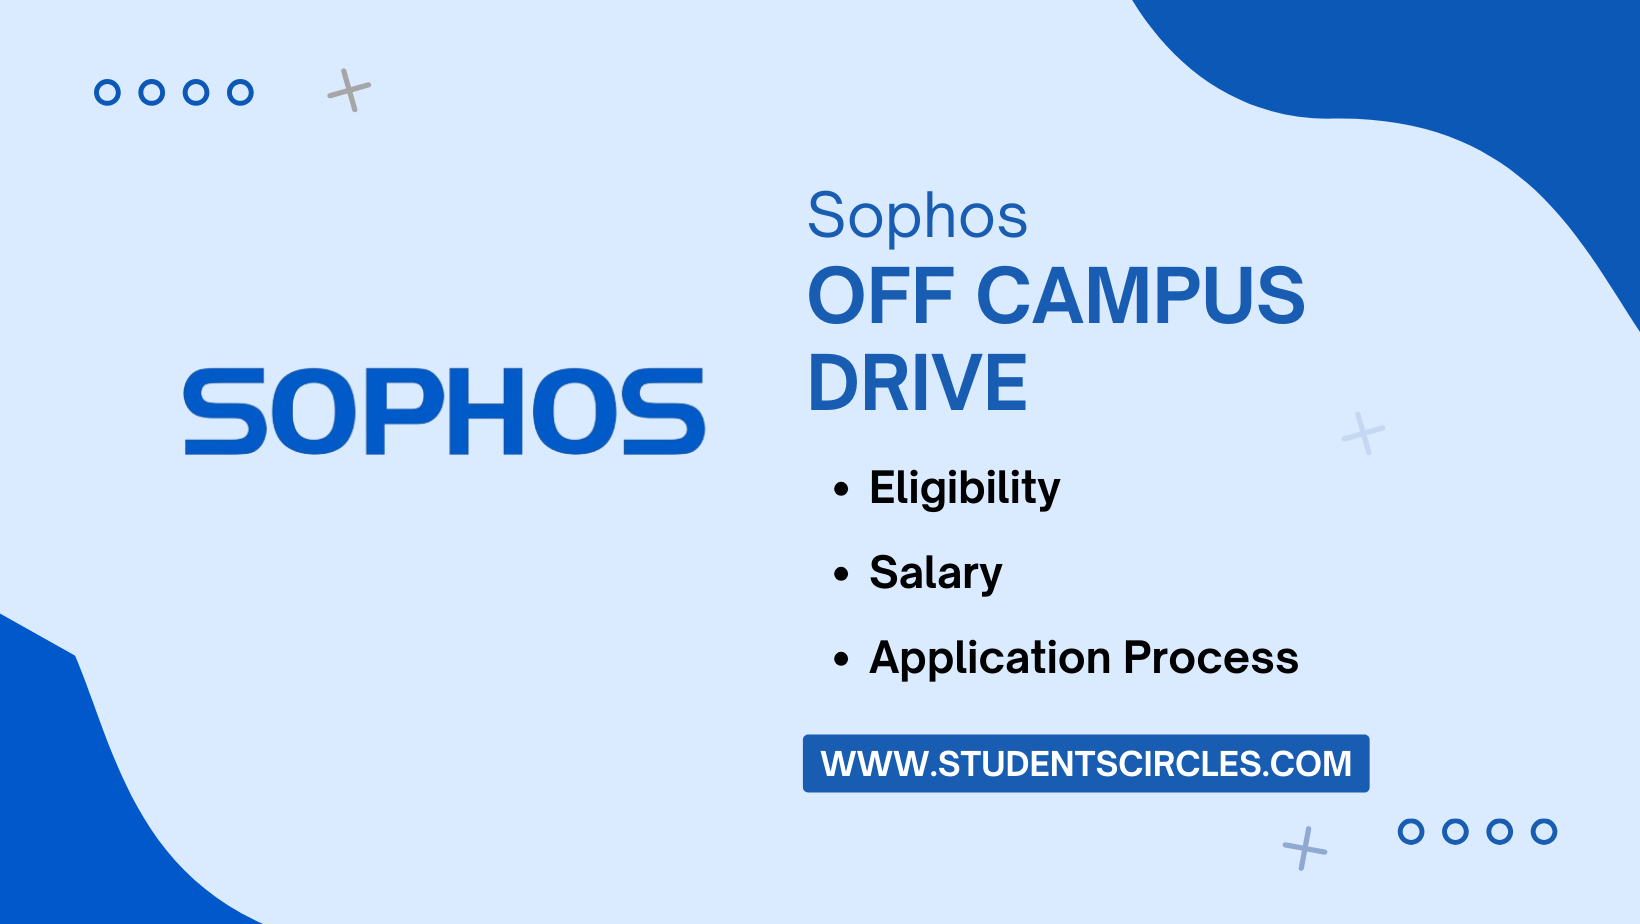 Sophos Off Campus Drive